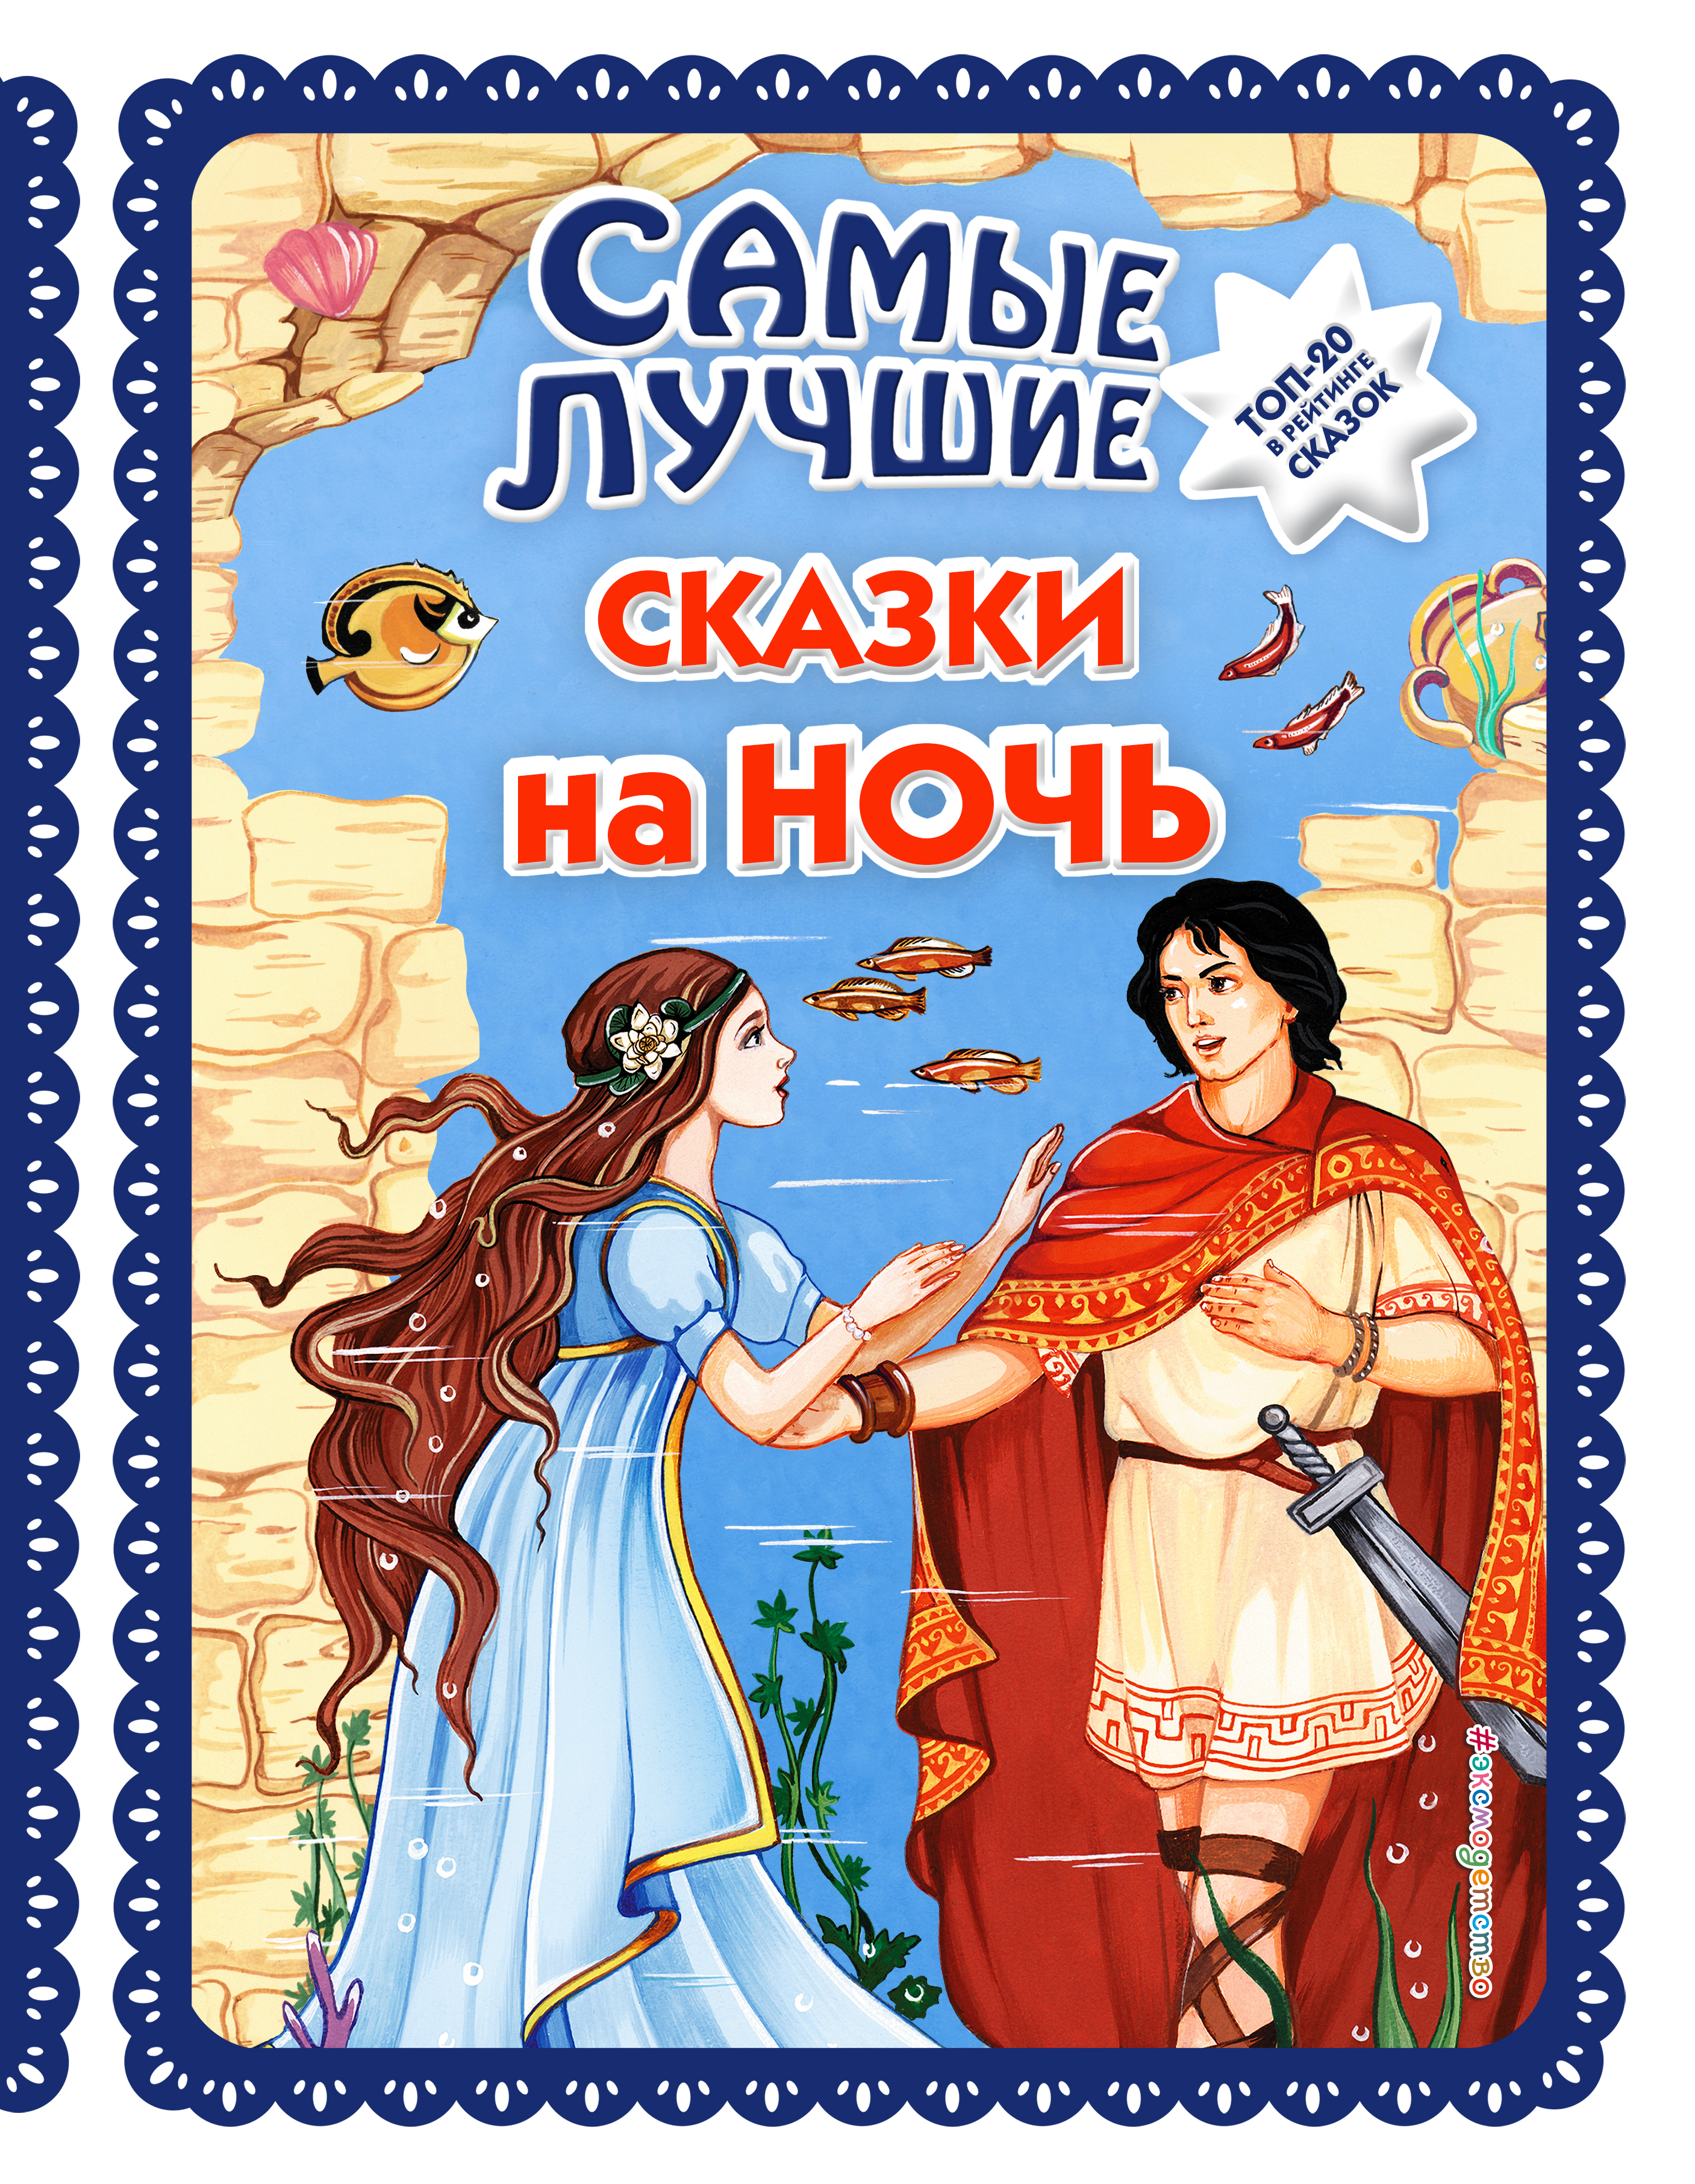 Аудио сказка: Русские народные сказки слушать онлайн и скачать